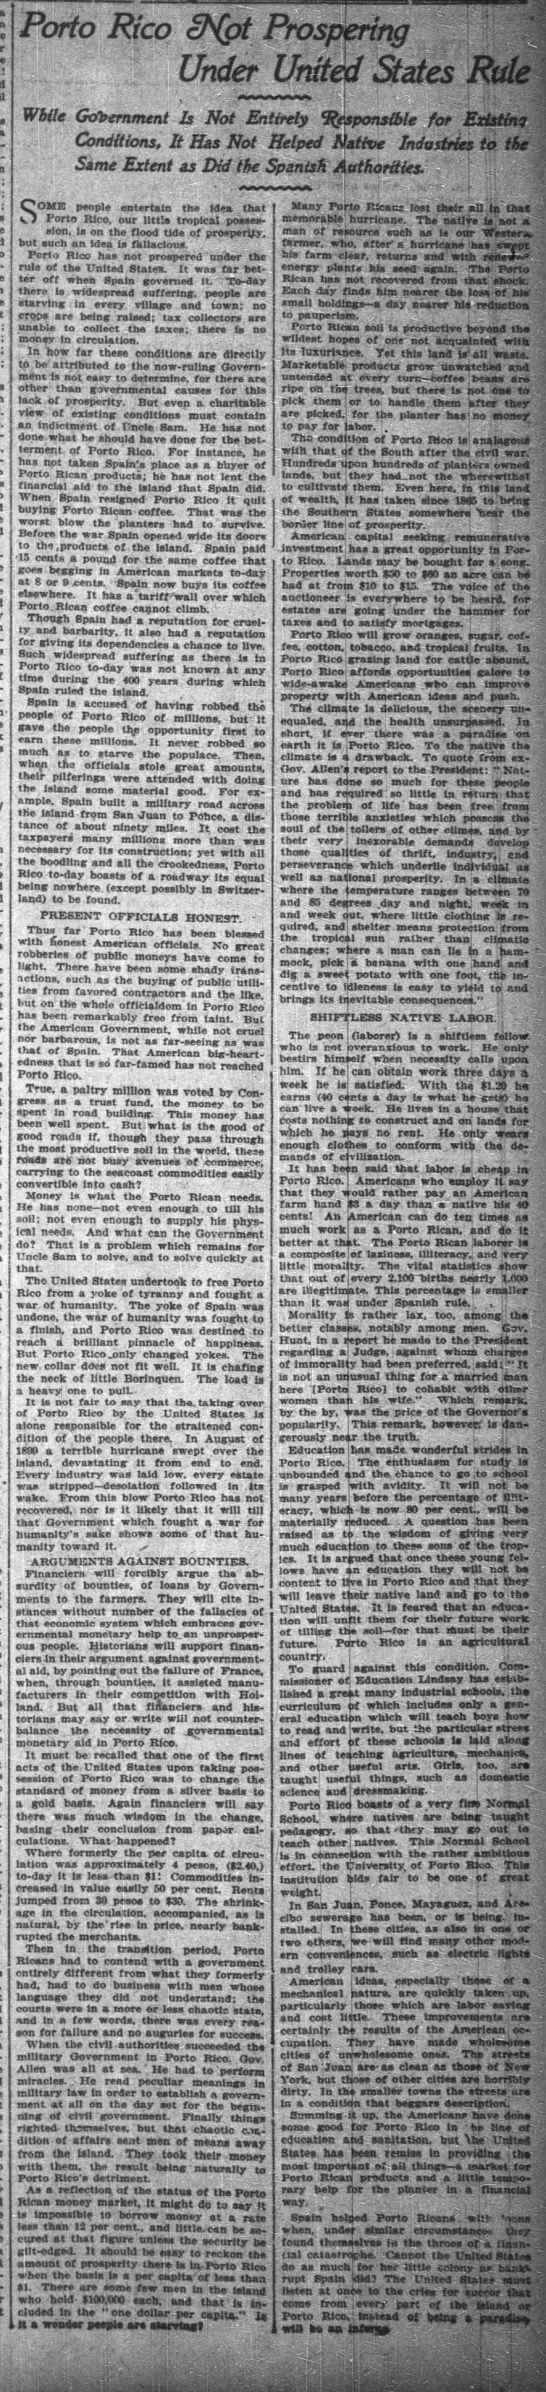 Porto Rico NYT 4 oct 1903 P27 - 